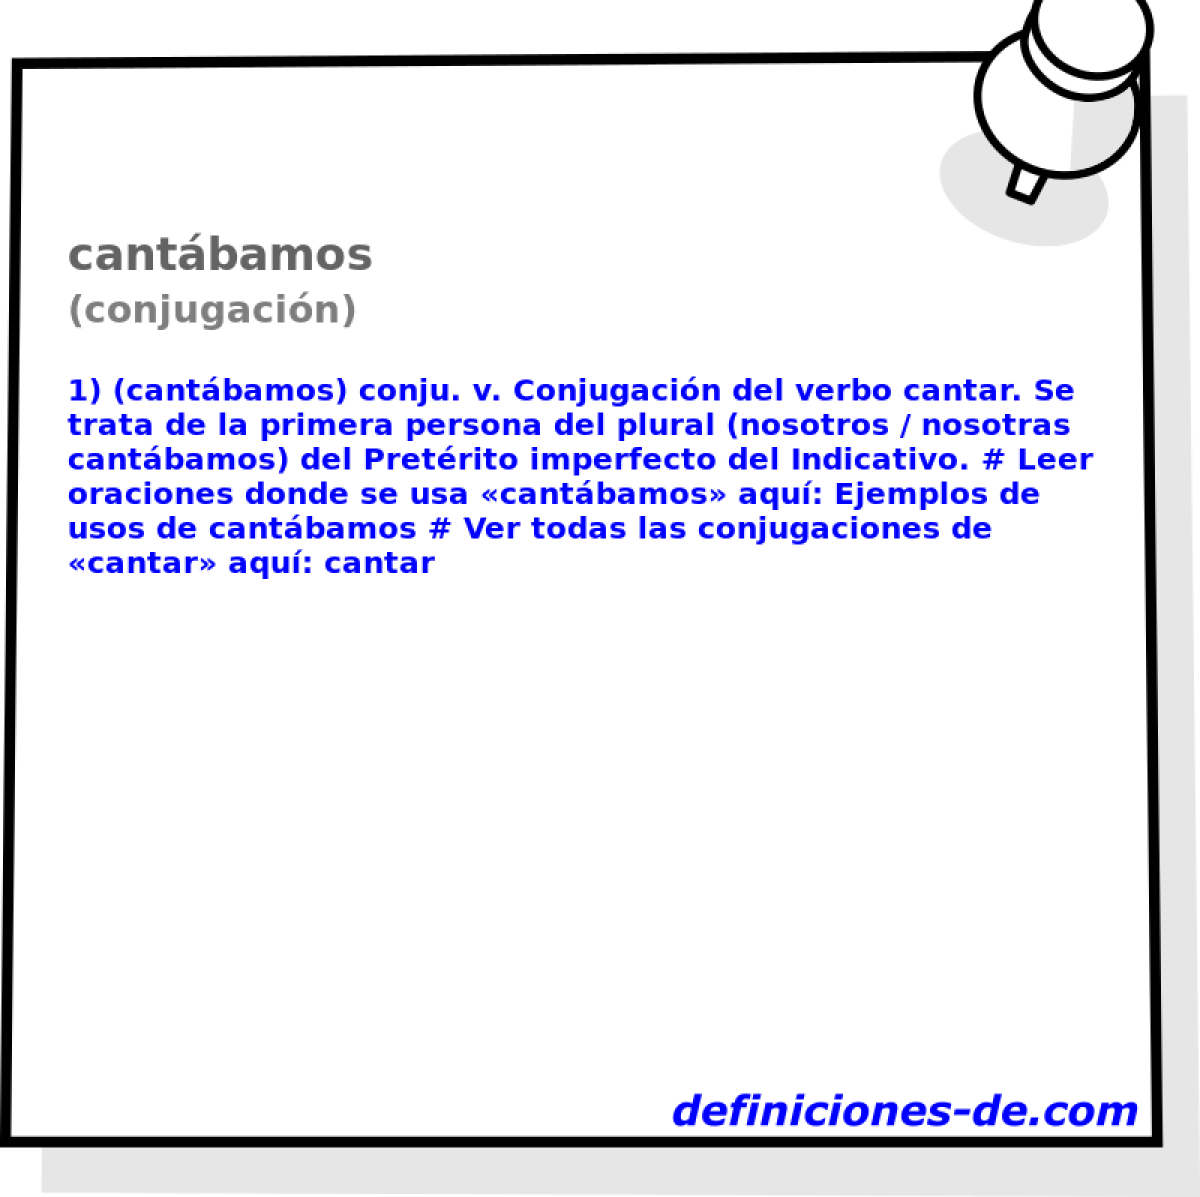 cantbamos (conjugacin)